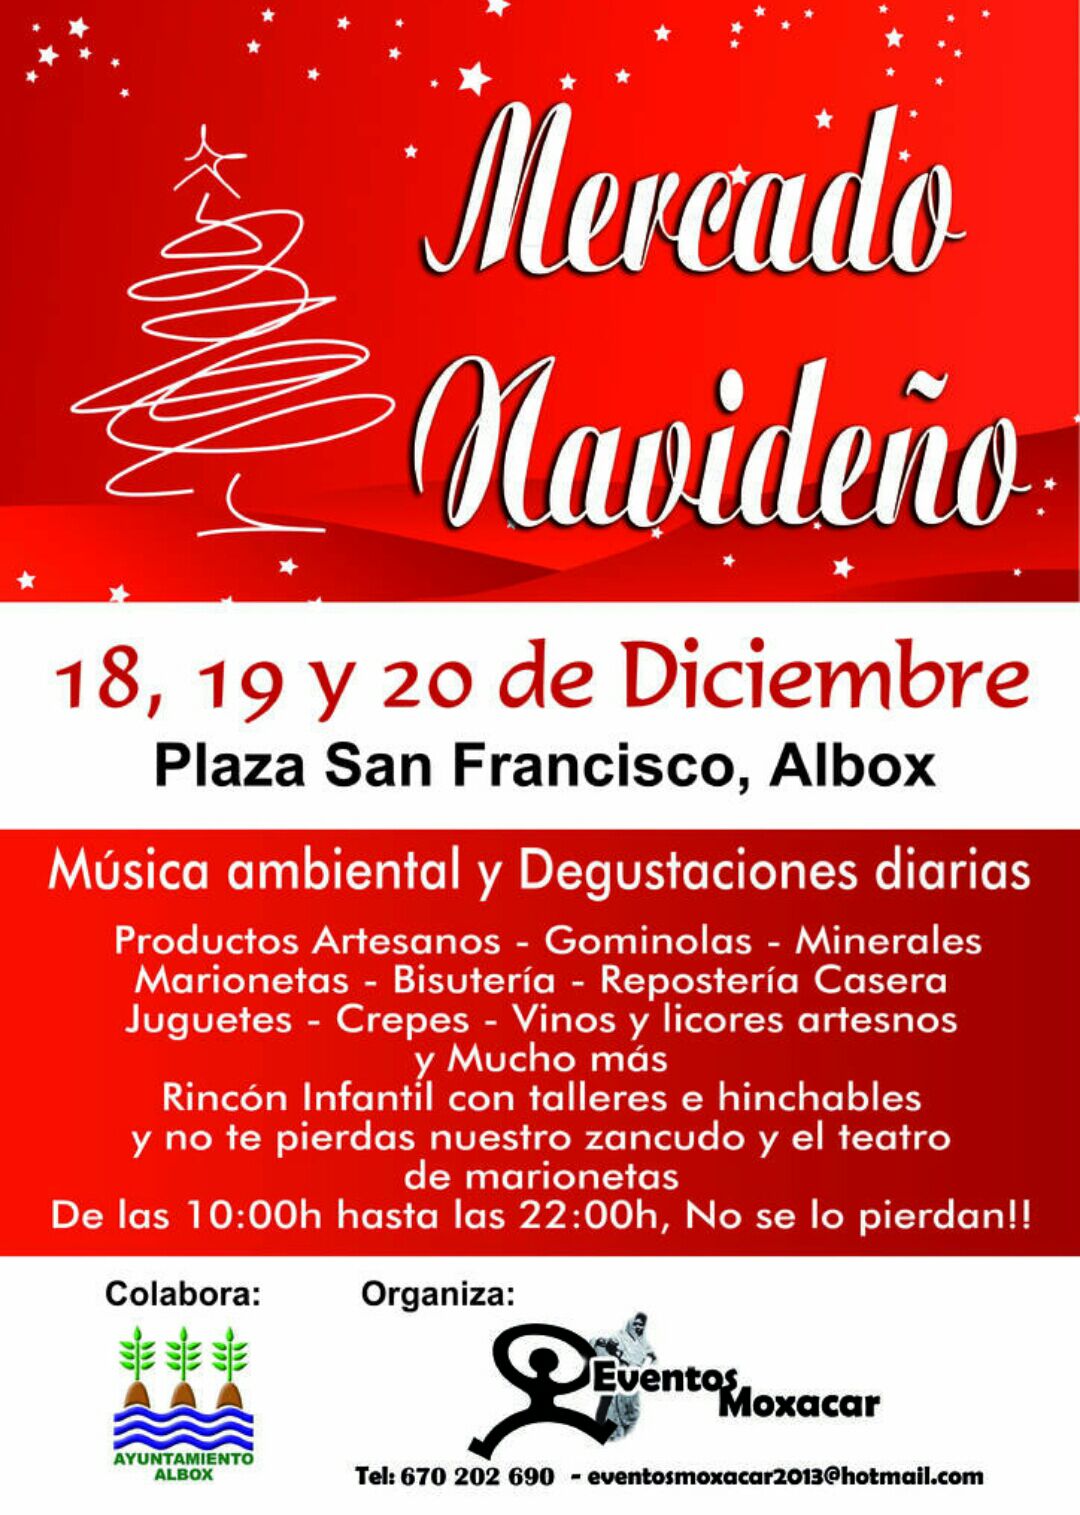 Mercado Medieval de Navidad  en ALbox, Almeria 18 al 20 de Diciembre del 2015